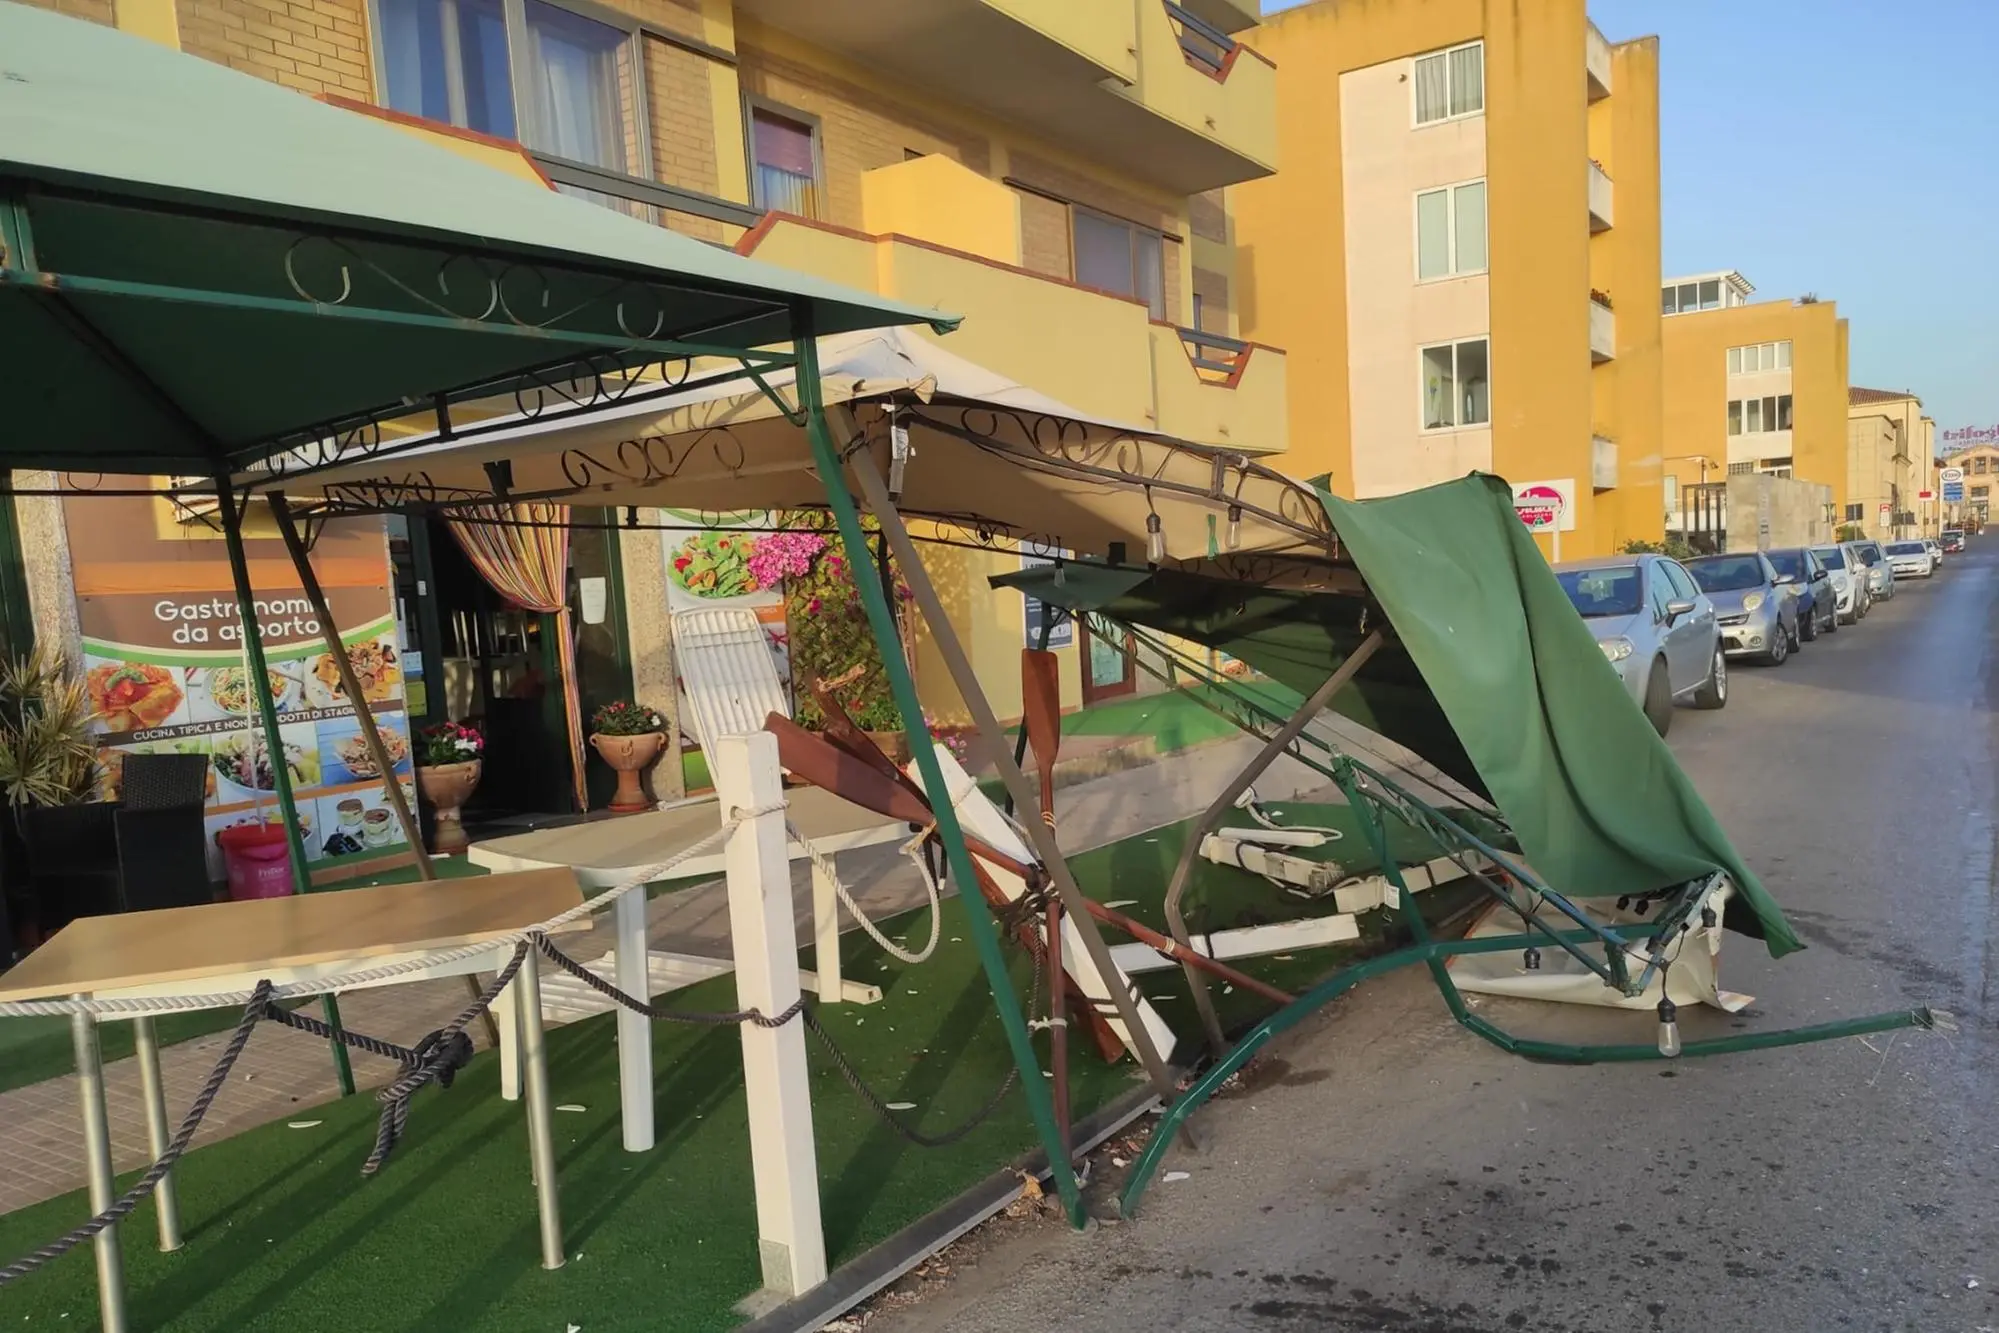 La veranda della gastronomia distrutta dall'urto (foto L'Unione Sarda - Tellini)